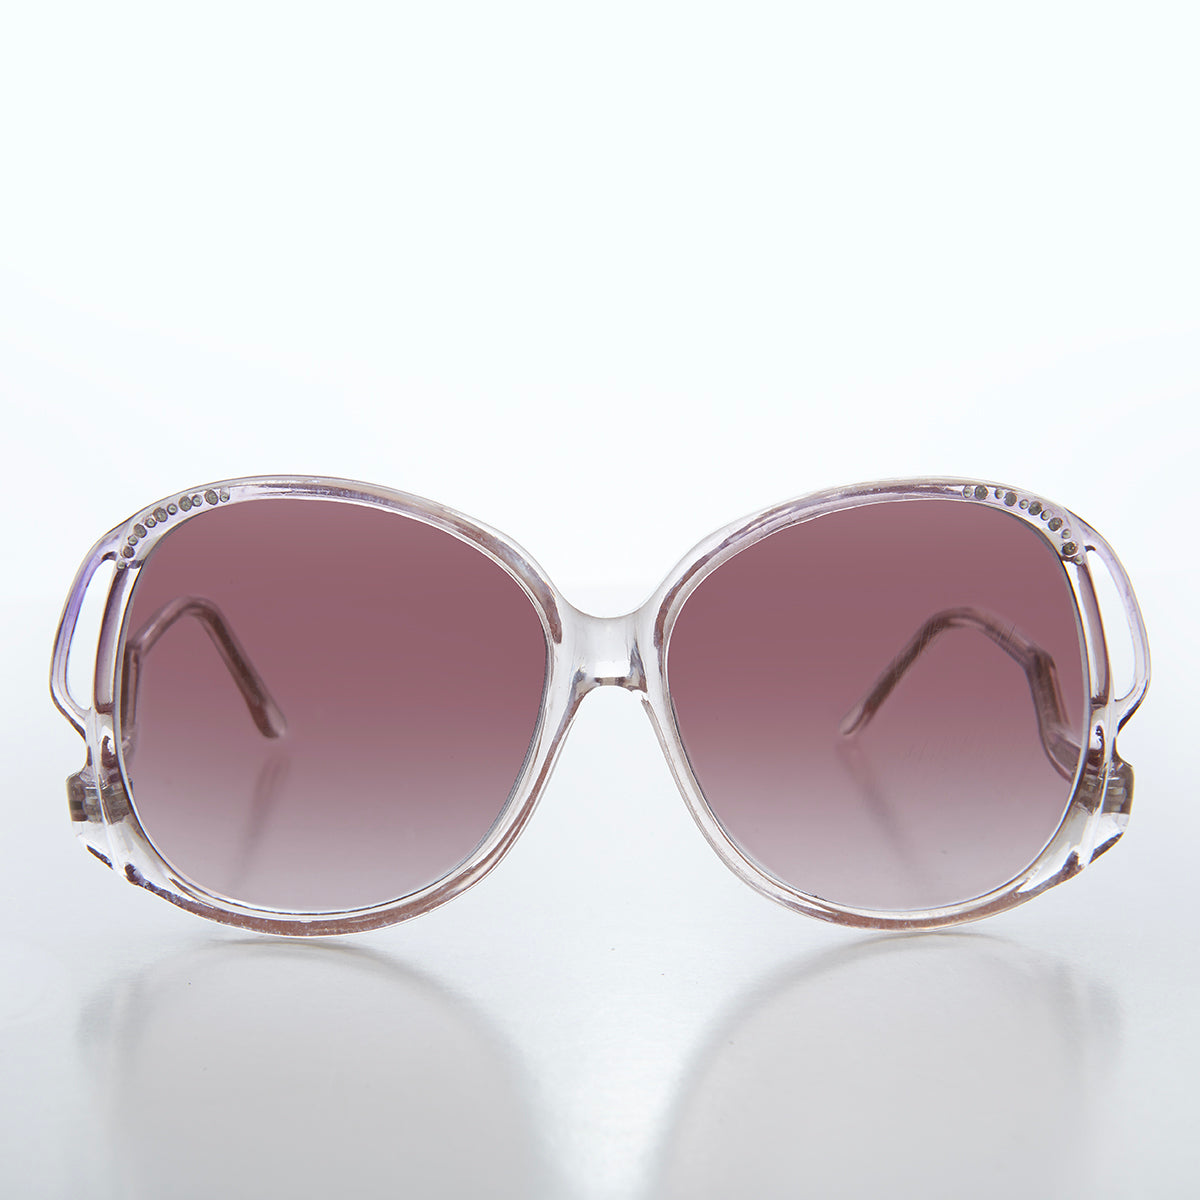 80s Women's Vintage Sunglasses